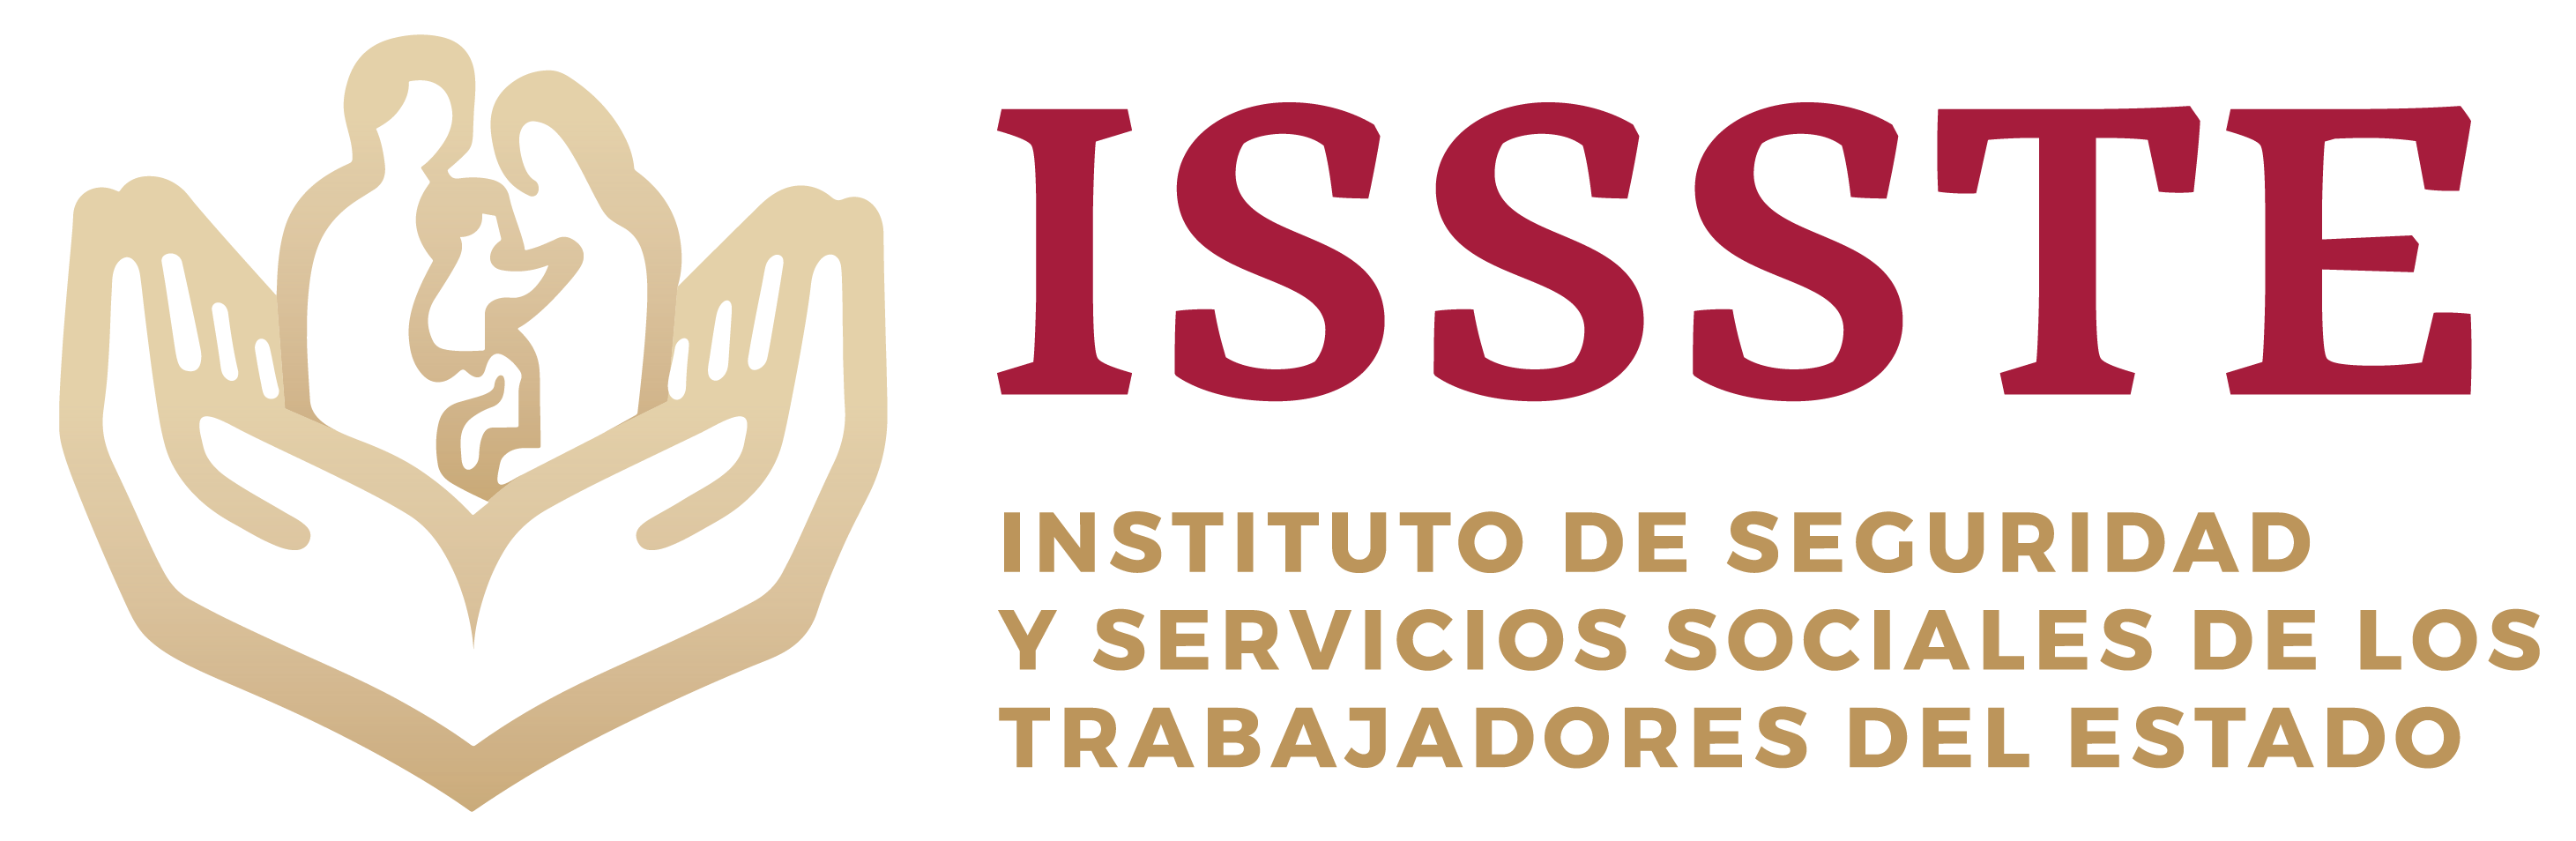 INSTITUTO DE SEGURIDAD Y SERVICIOS SOCIALES DE LOS TRABAJADORES DEL ESTADO